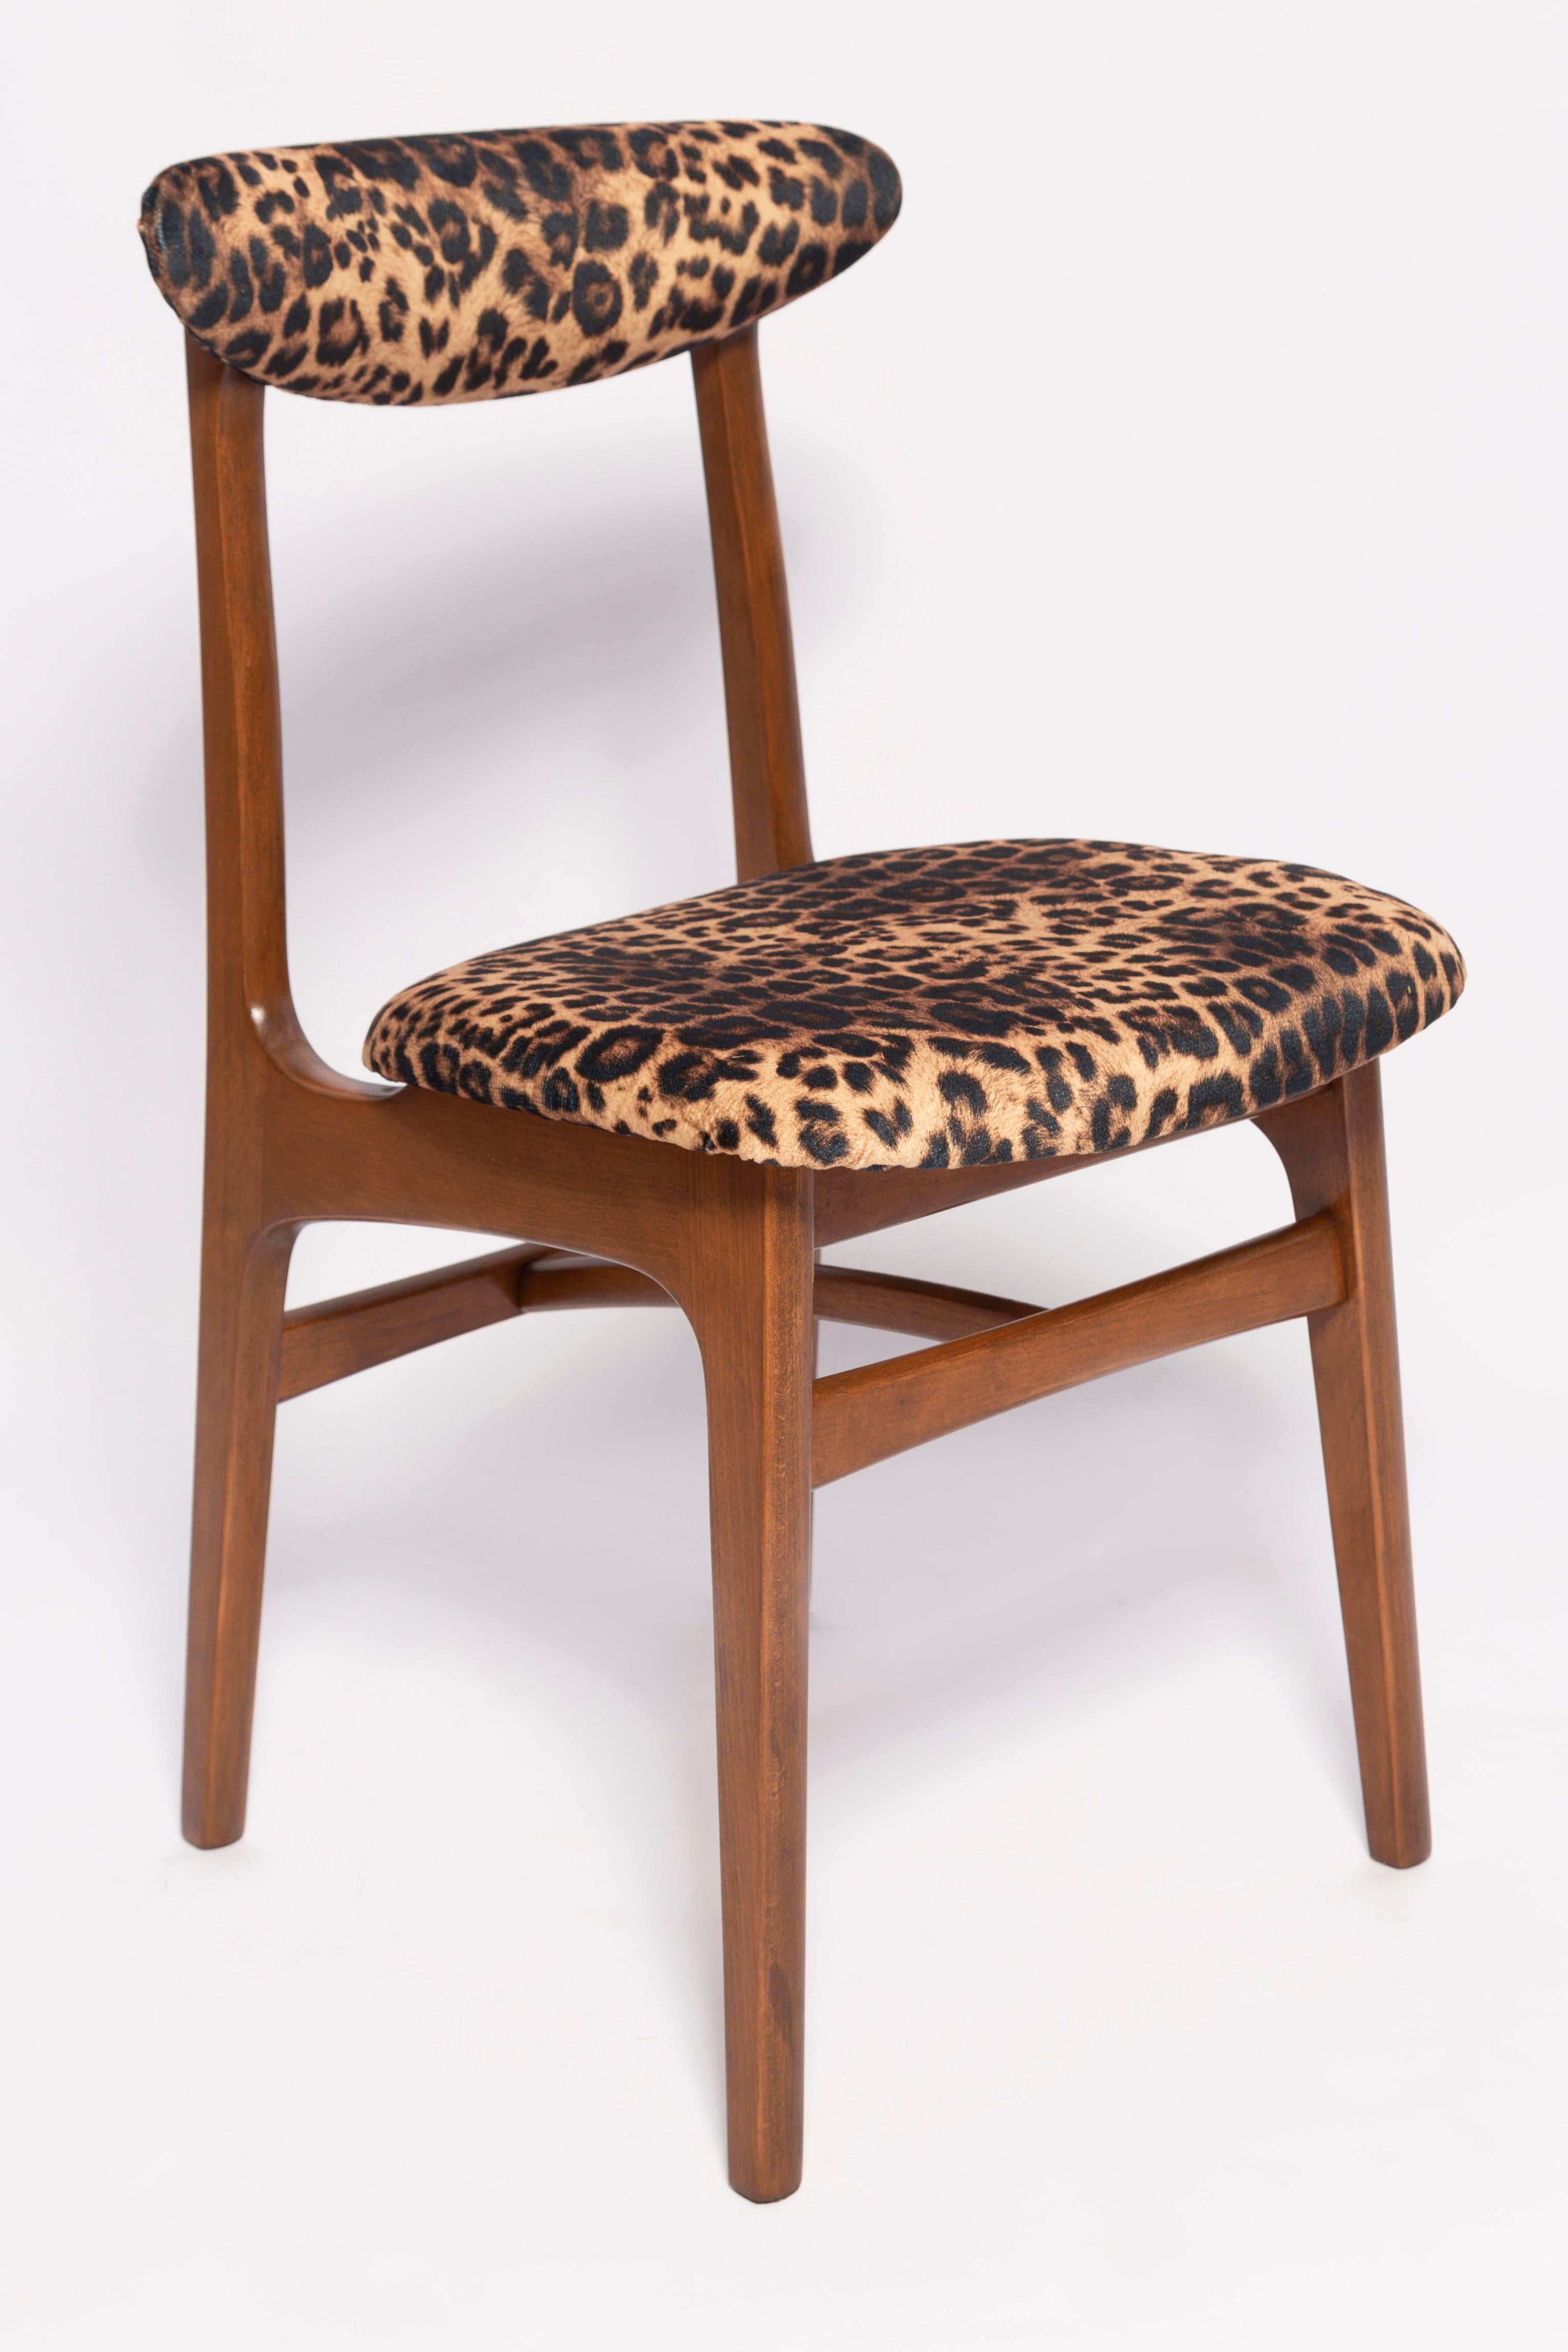 Chaise conçue par le professeur Rajmund Halas. Fabriqué en bois de hêtre. Le fauteuil a subi une rénovation complète de la tapisserie et les boiseries ont été rafraîchies. Le siège est habillé d'un tissu velours unique imprimé léopard, durable et